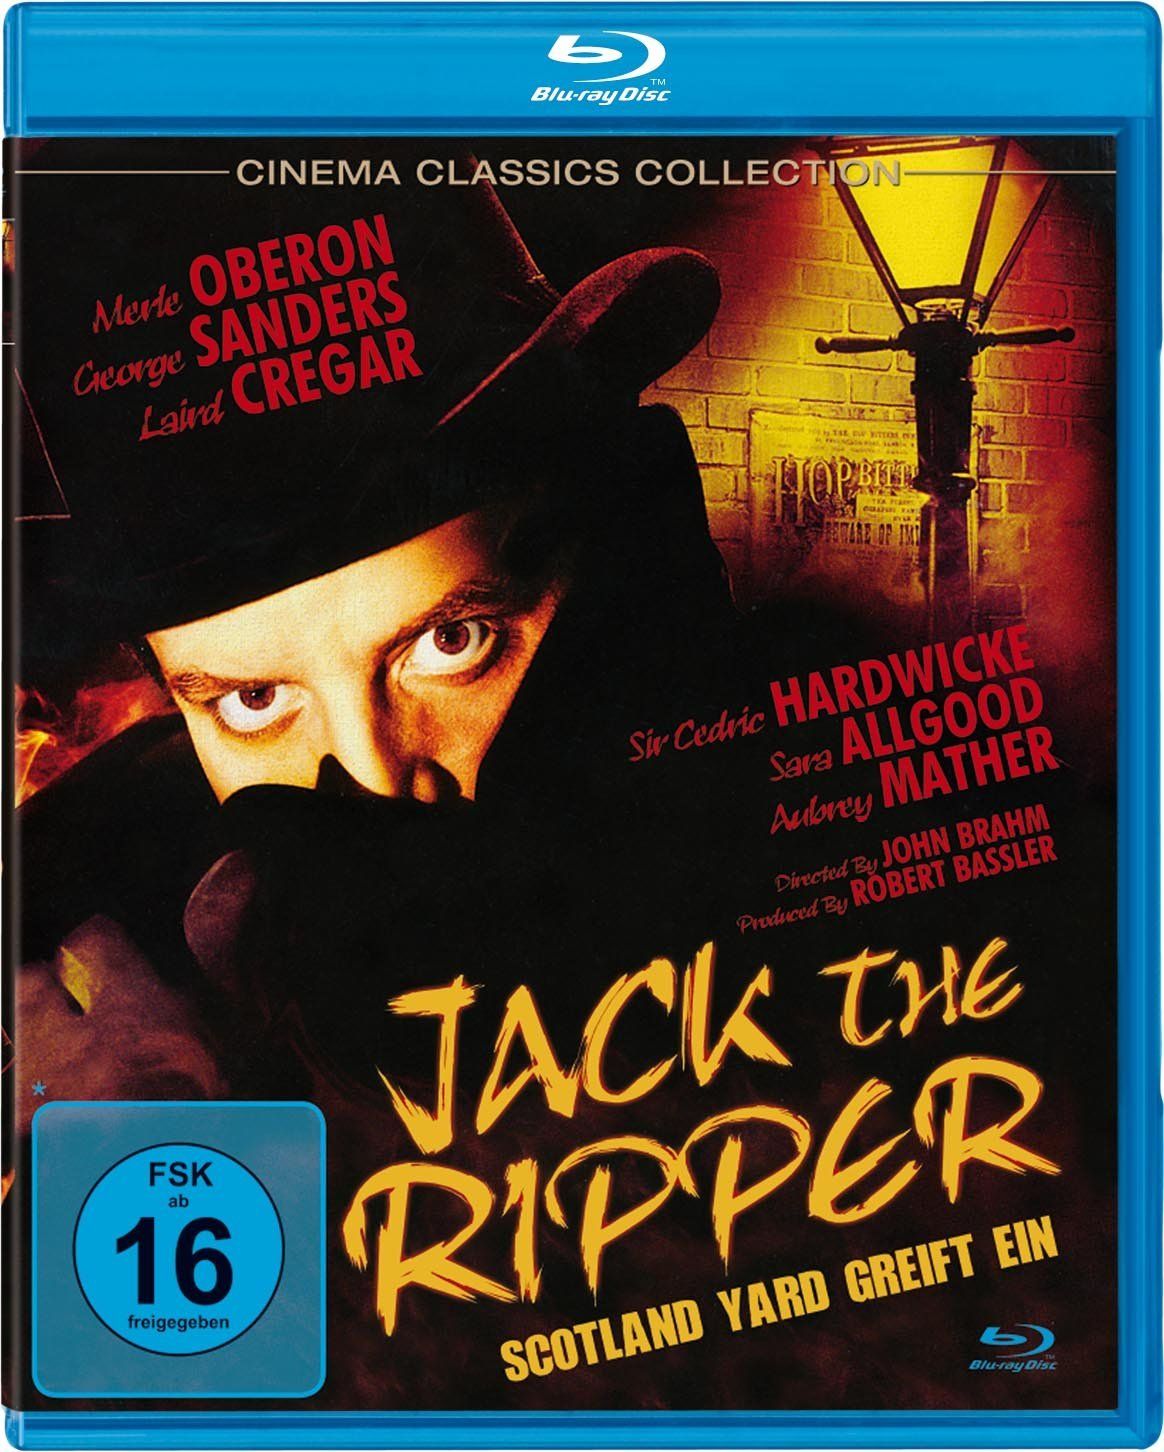 Jack the Ripper - Scotland Yard greift ein (BLURAY)